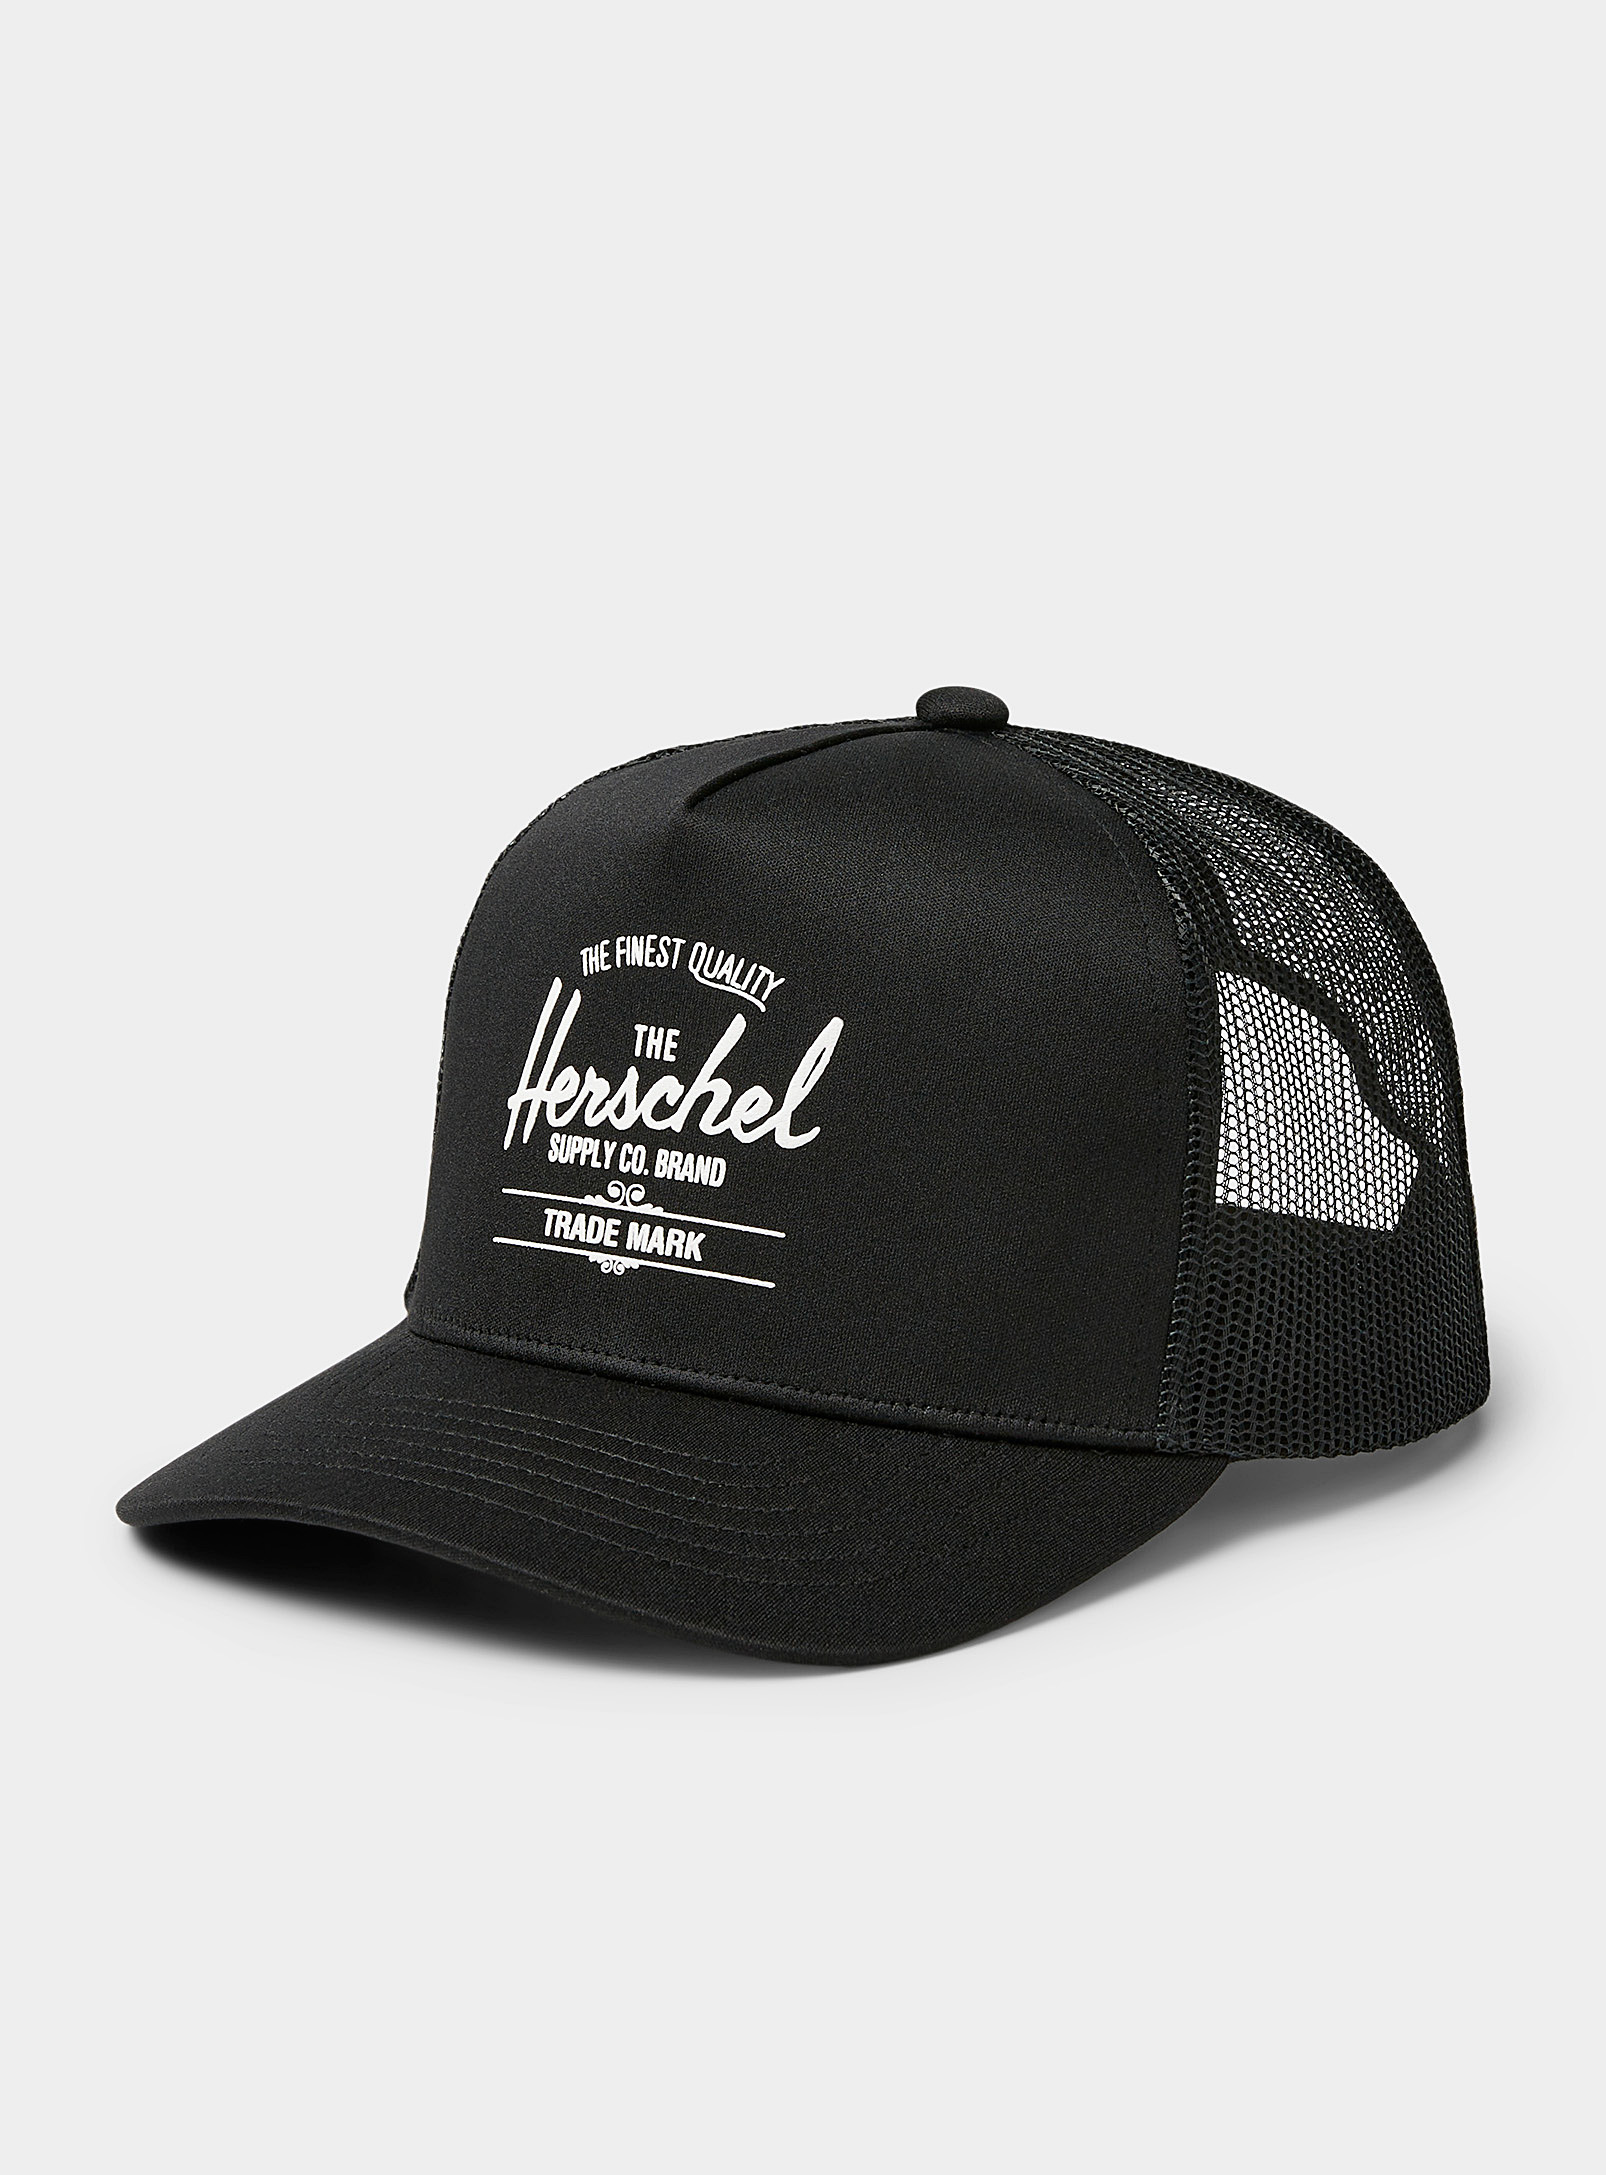 Herschel - Men's Whaler trucker cap